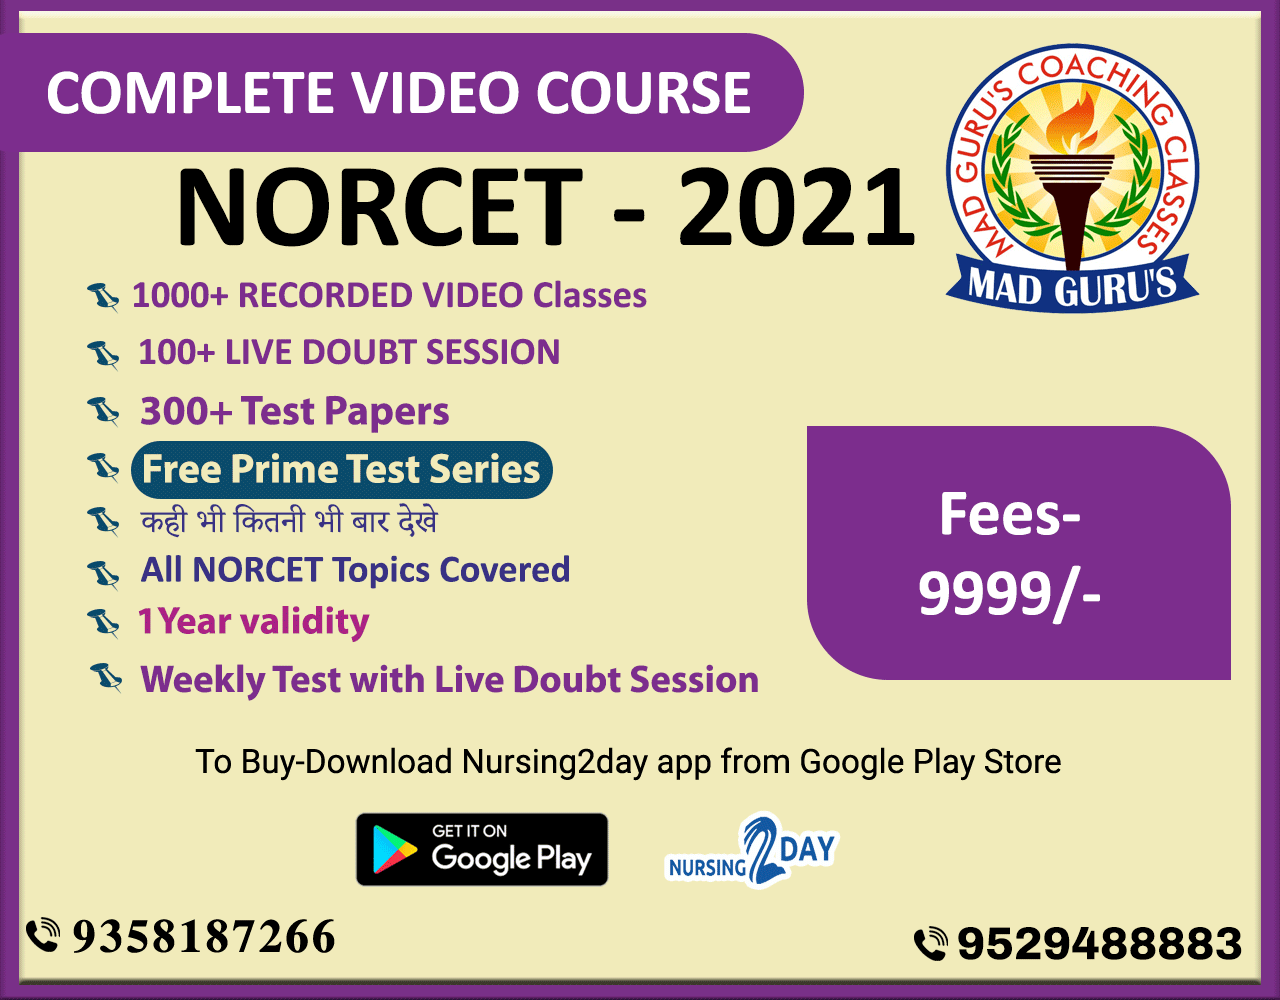 Demo Norcet course